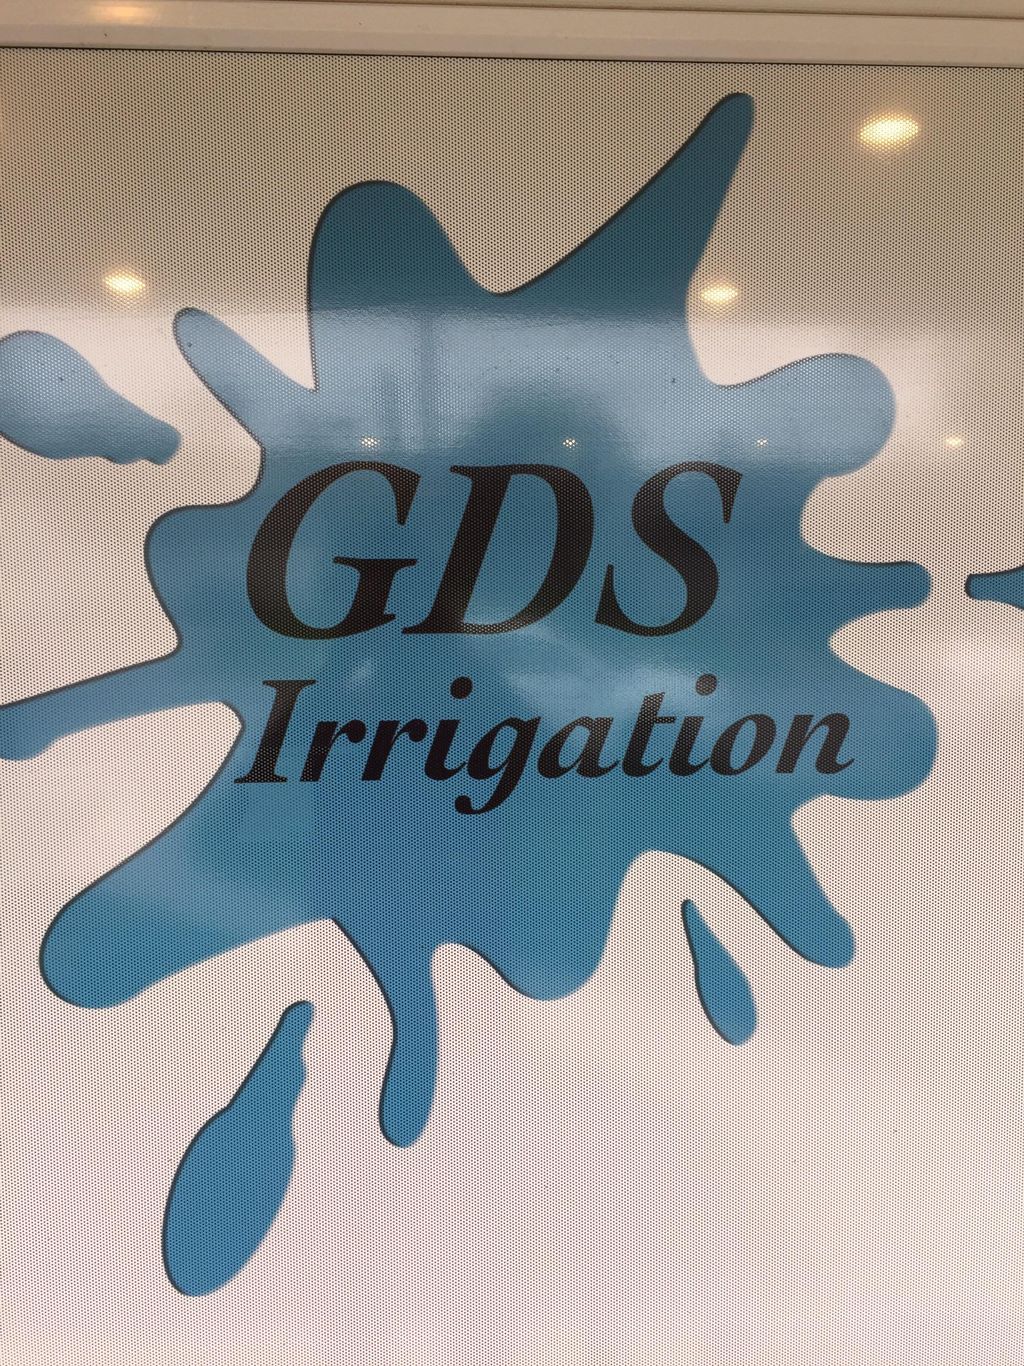 GDS Irrigation